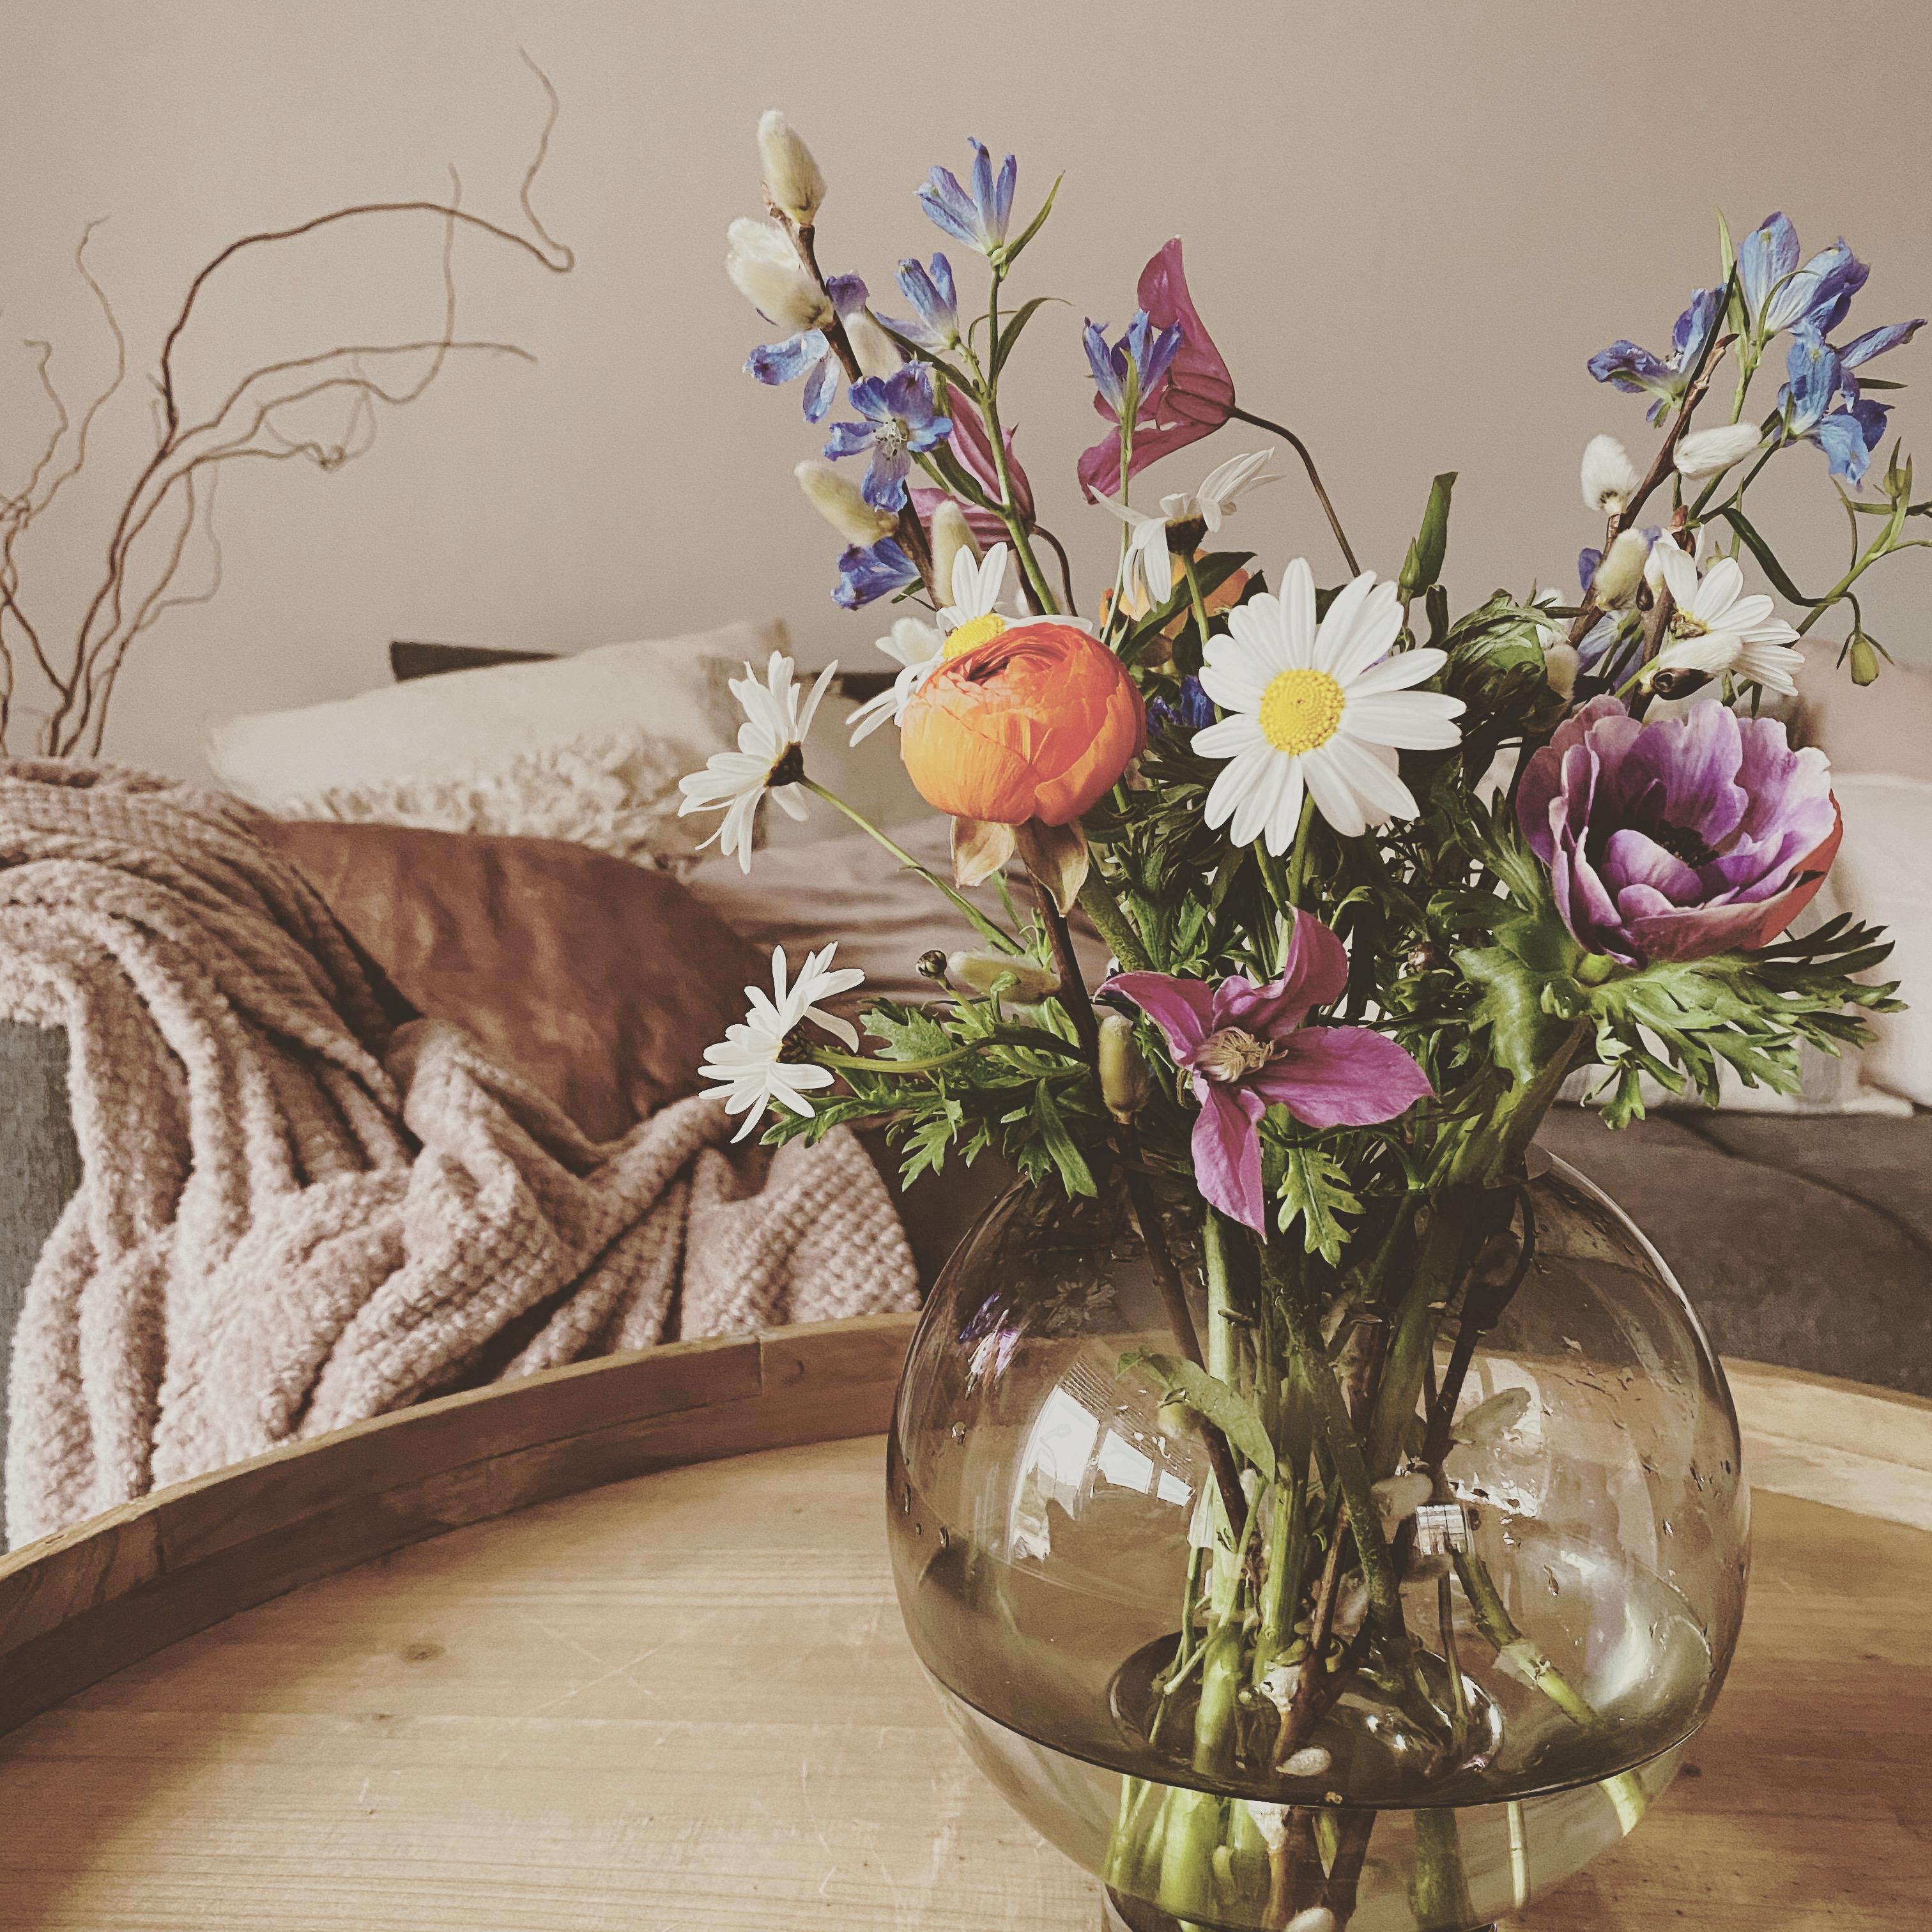 #freshflowers
#frühlingsfarben#springfeeling#blumenmädchen#farbenfroh